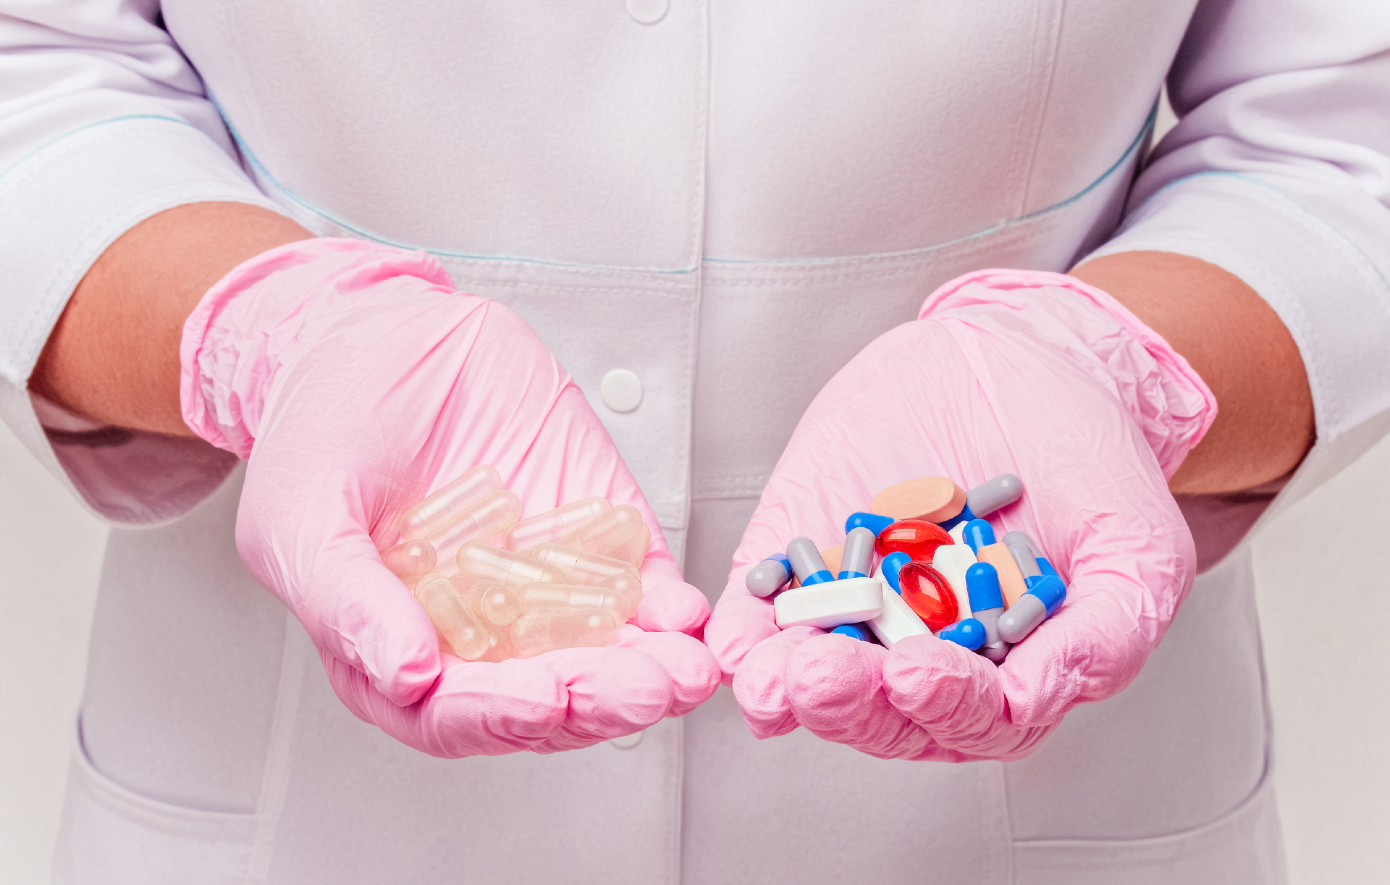 Φαινόμενο Placebo: Τι είναι και πώς αξιοποιείται στην ιατρική